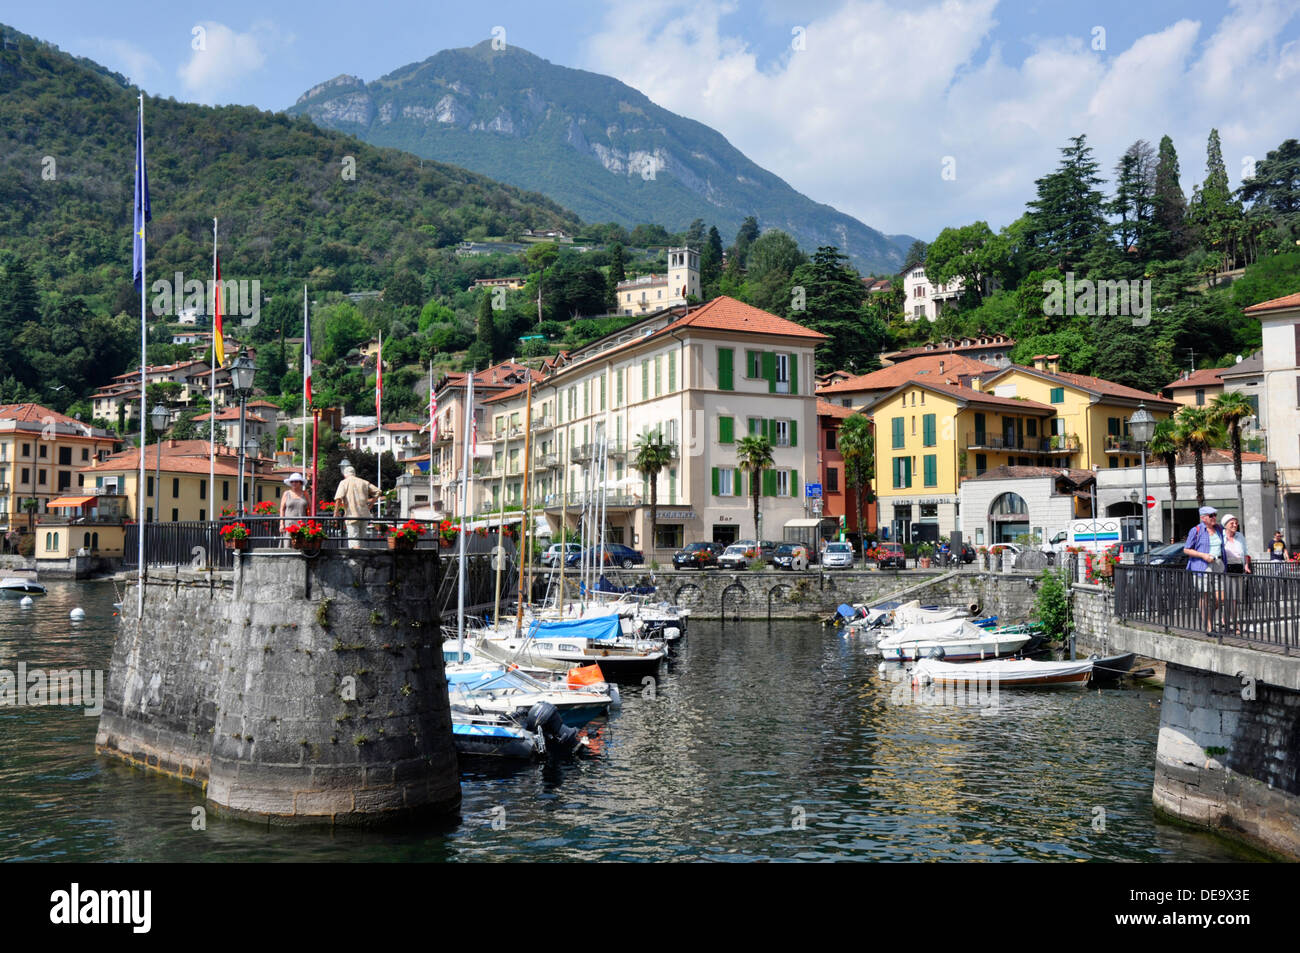 Italien - Comer See - Menaggio - Hafen - ankern Yachten - Reflexionen - Kulisse der Stadt und der fernen Berge Stockfoto